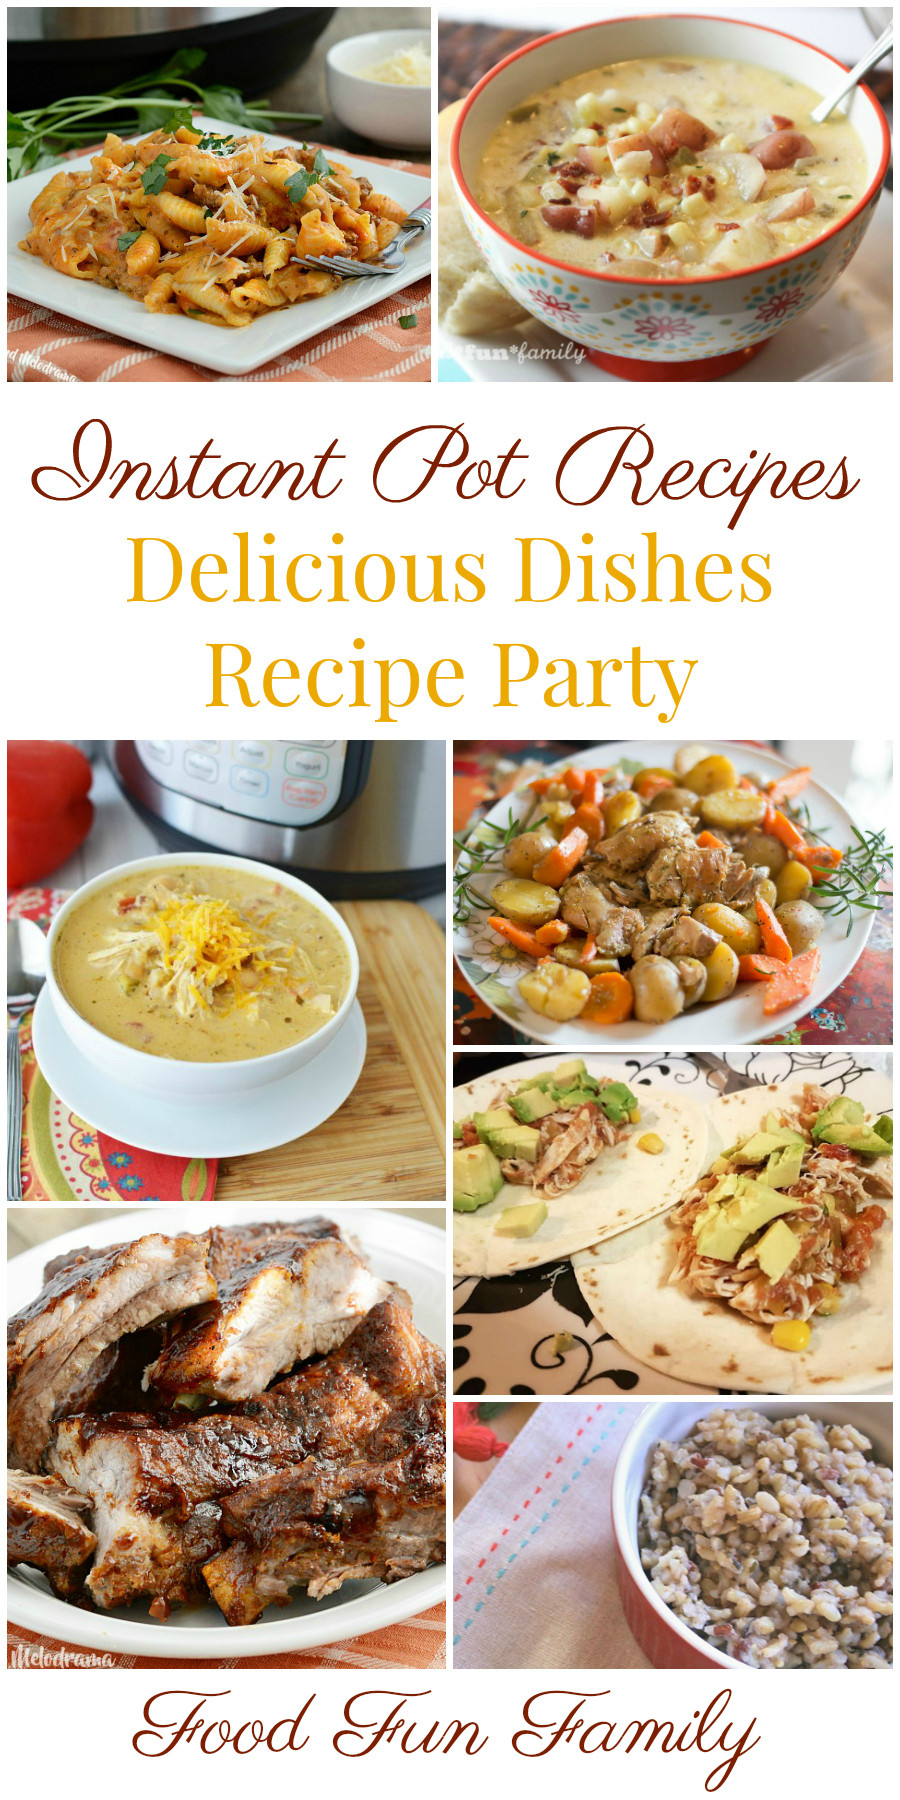 Delicious Instant Pot Recipes
 Instant Pot Recipes – a Delicious Dishes Recipe Party